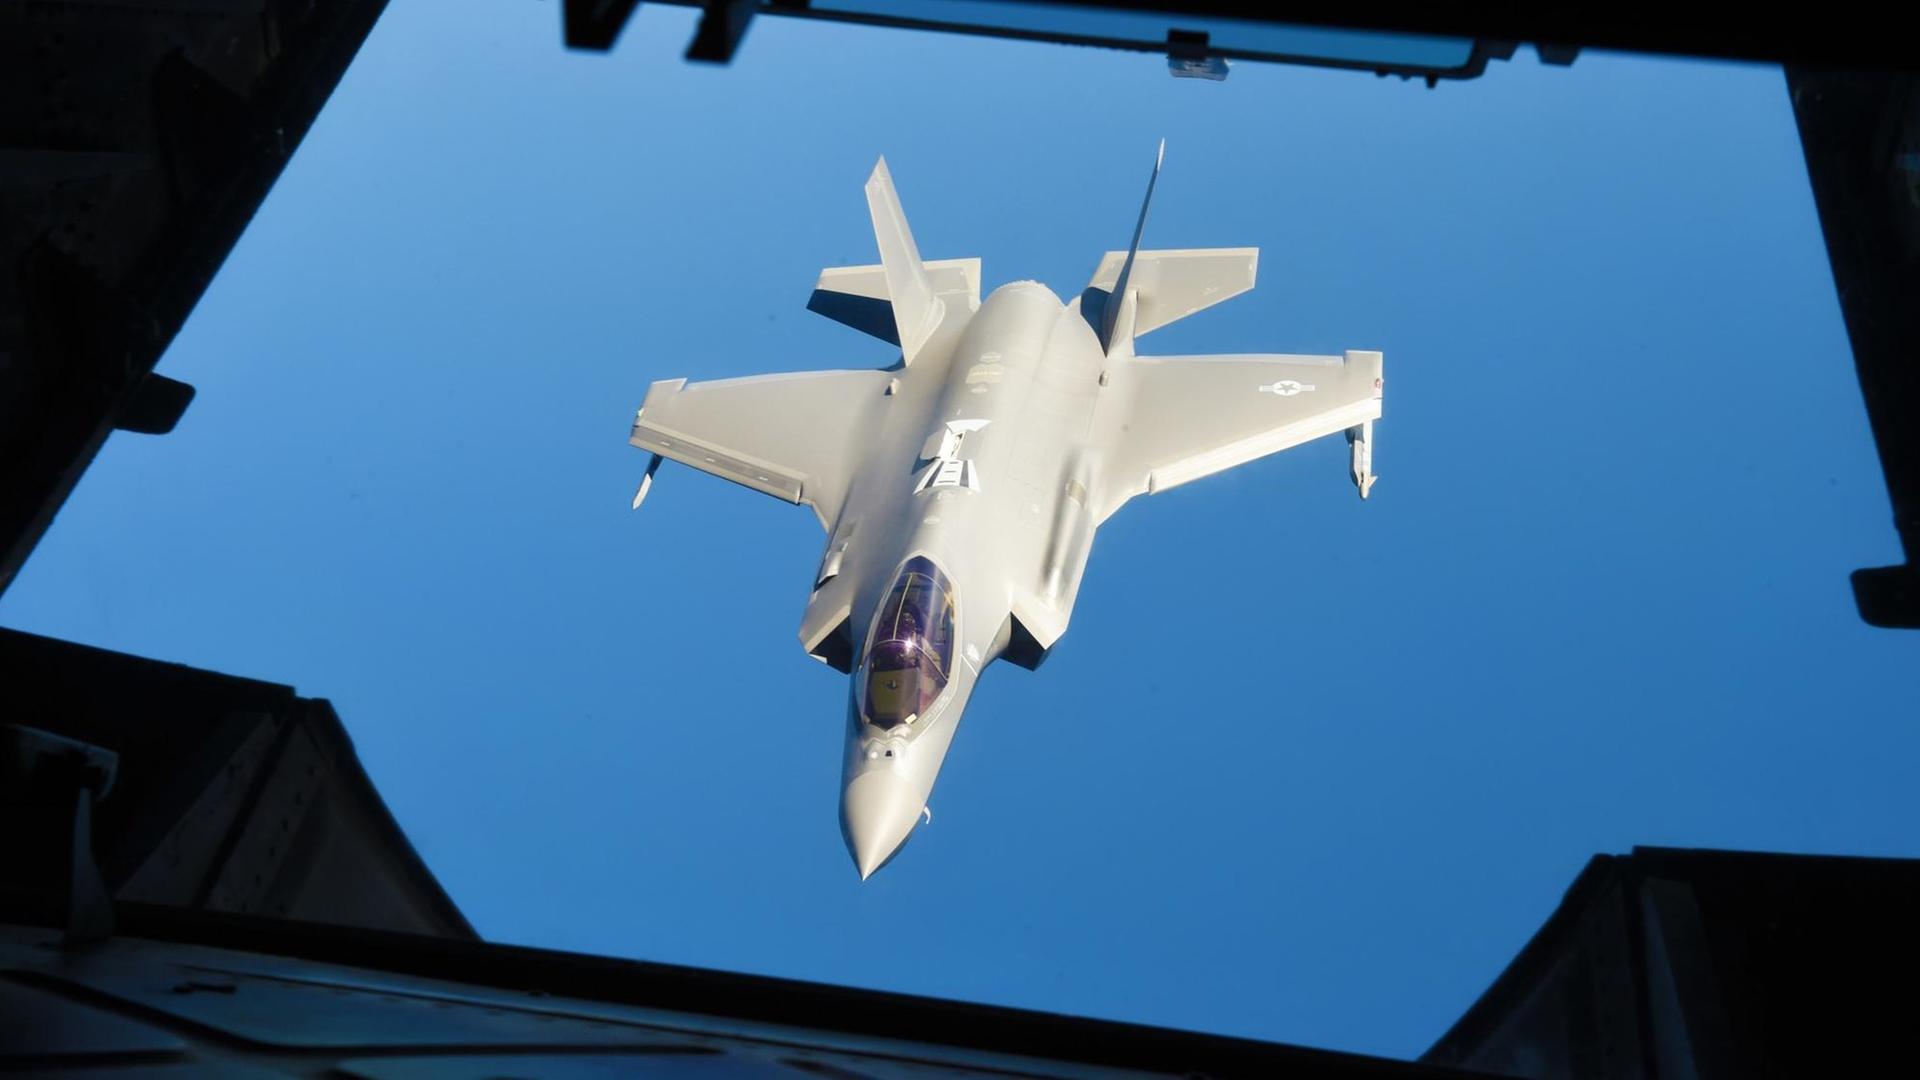 Medienbericht - Krisensitzung im Verteidigungsministerium wegen Anschaffung von F-35-Jets